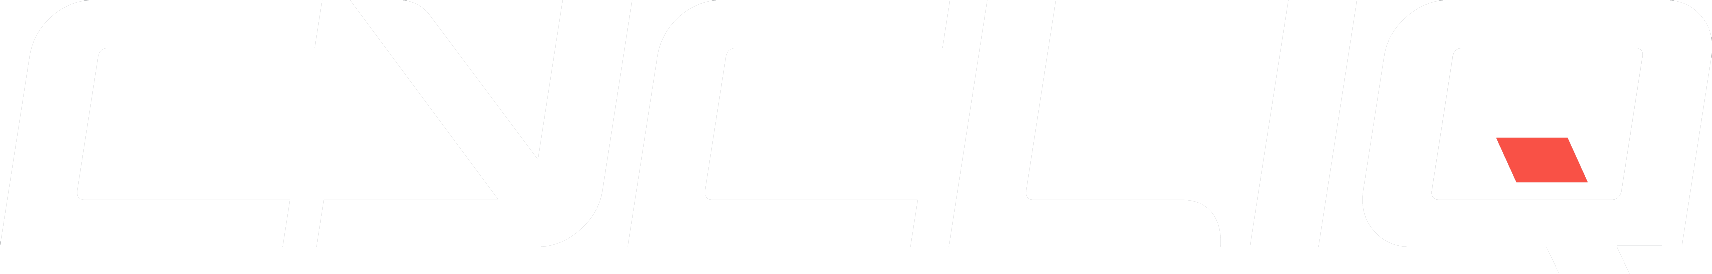 Cycliq Logo